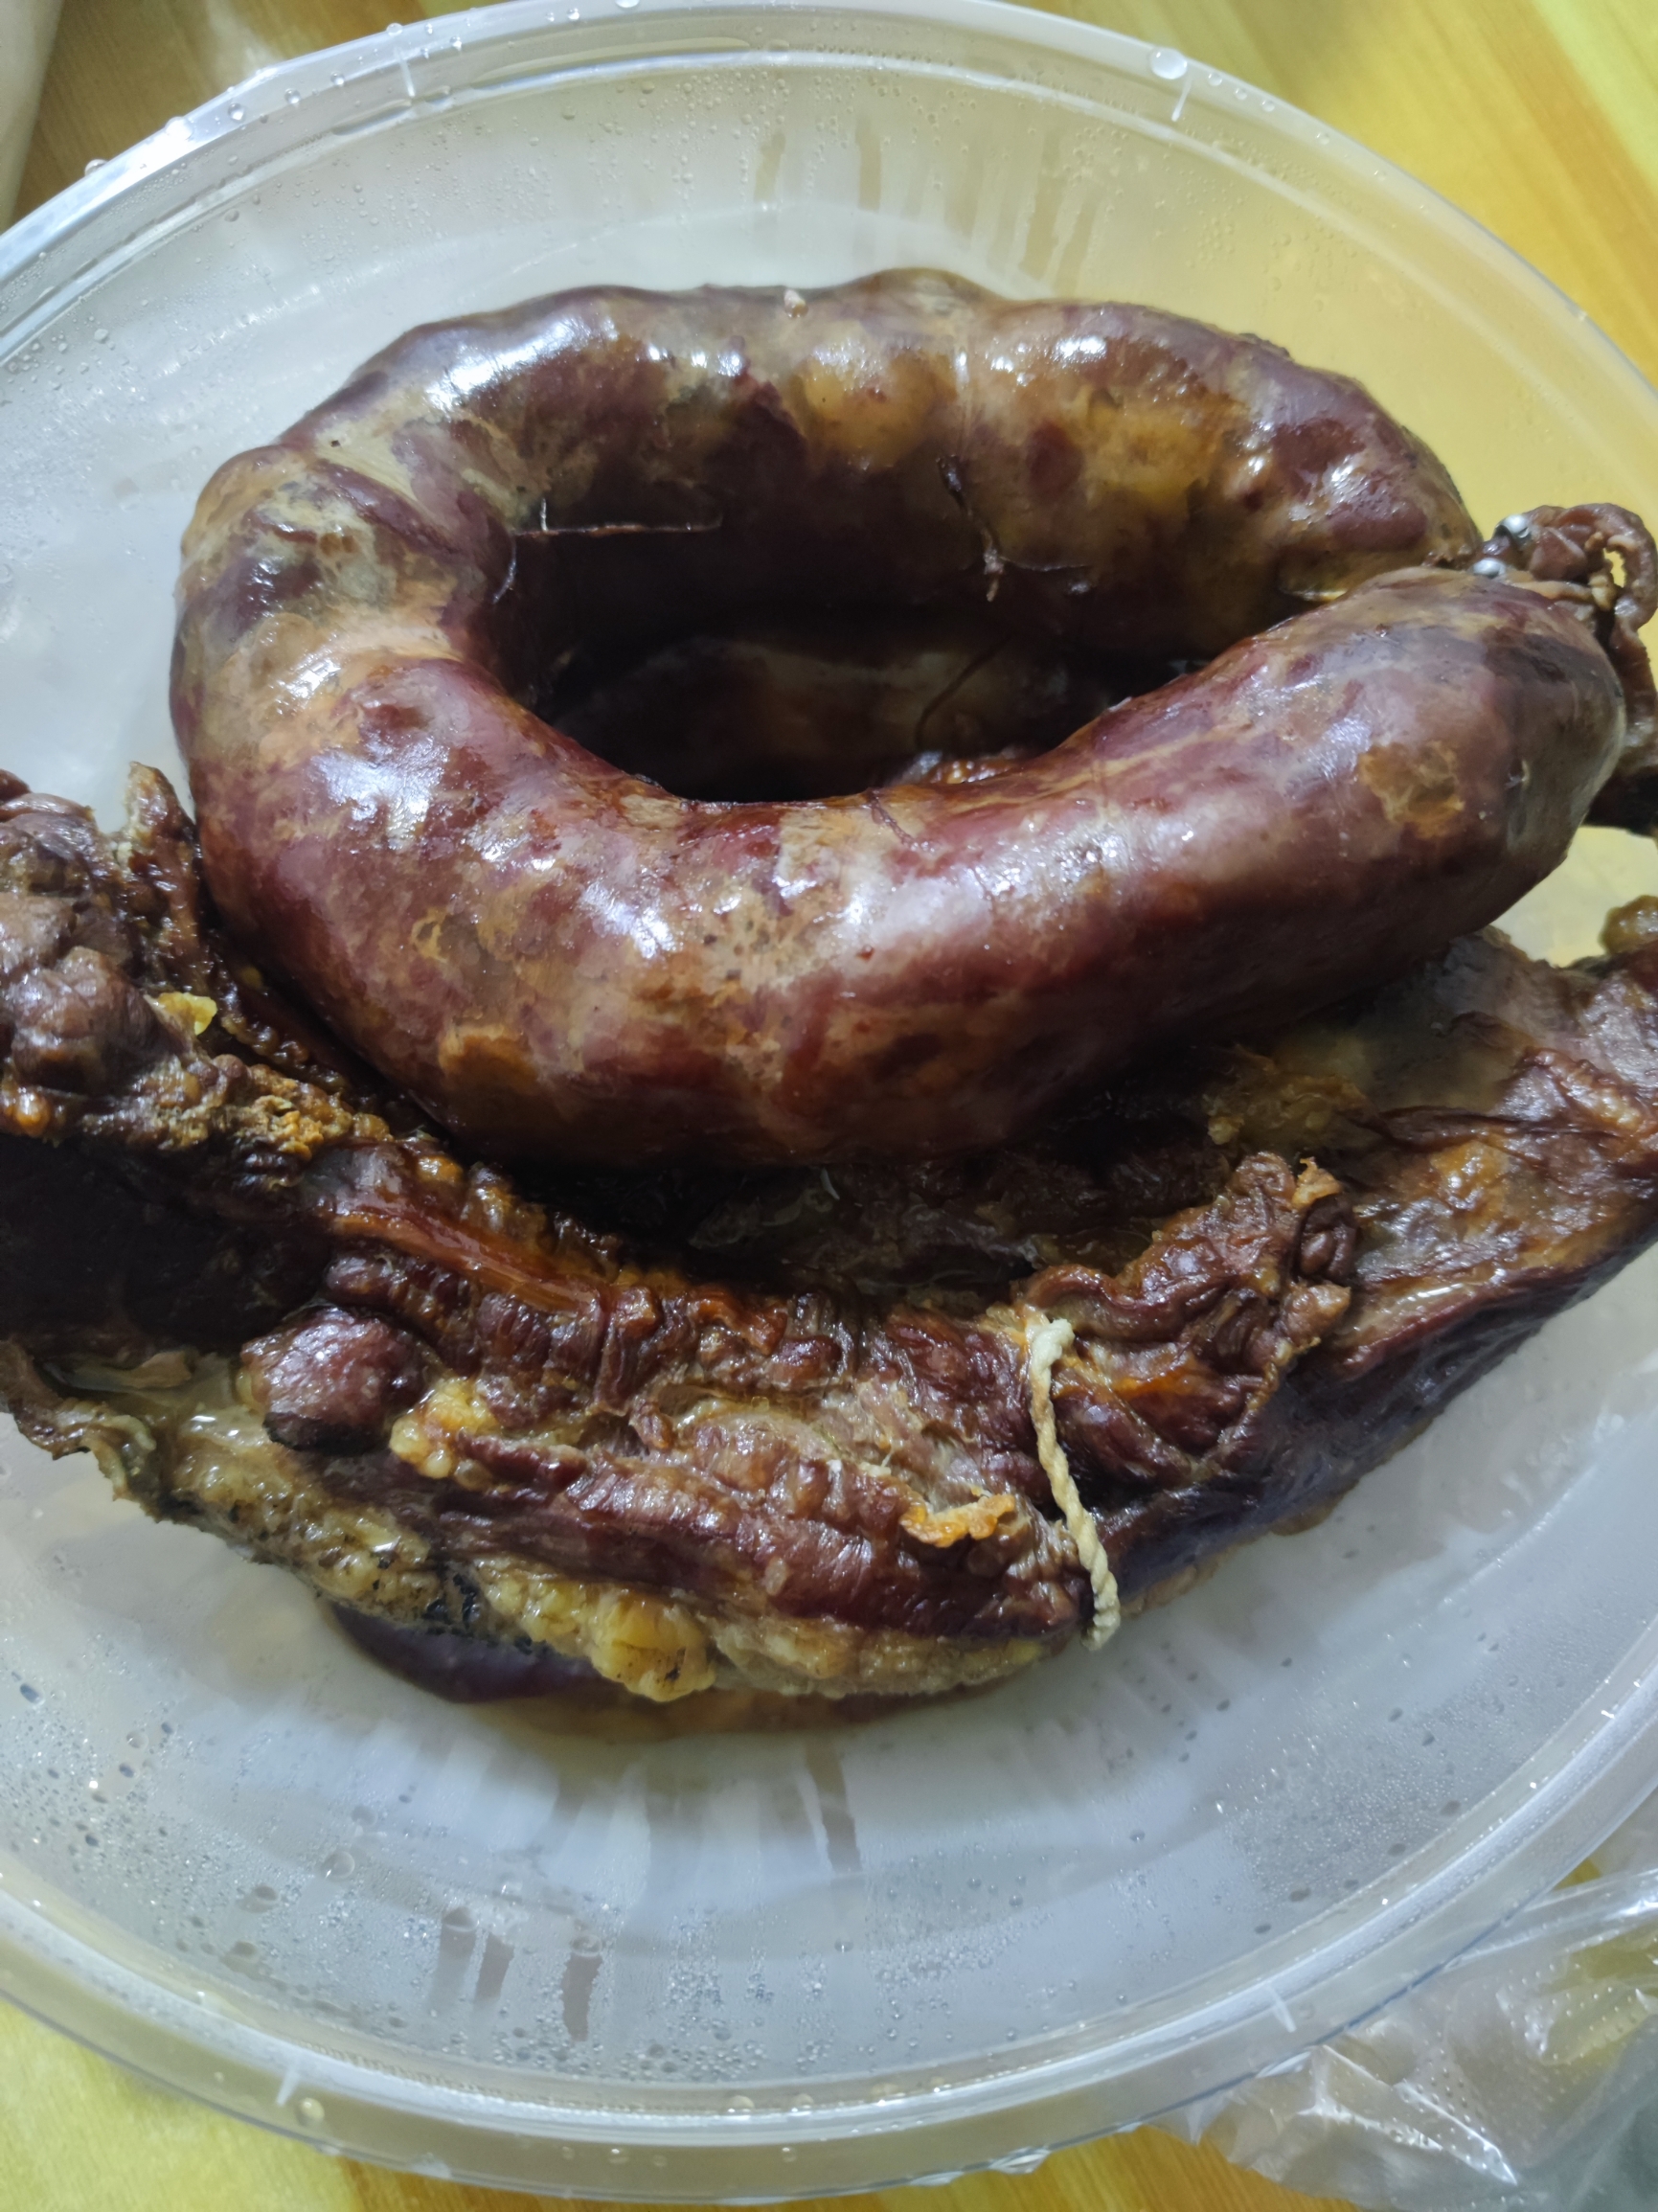 吉木萨尔哈萨克自家养的熏马肉熏马肠，味道好，价格实惠，主要是吃的放心，没吃过熏马肉的小伙伴一定要试一